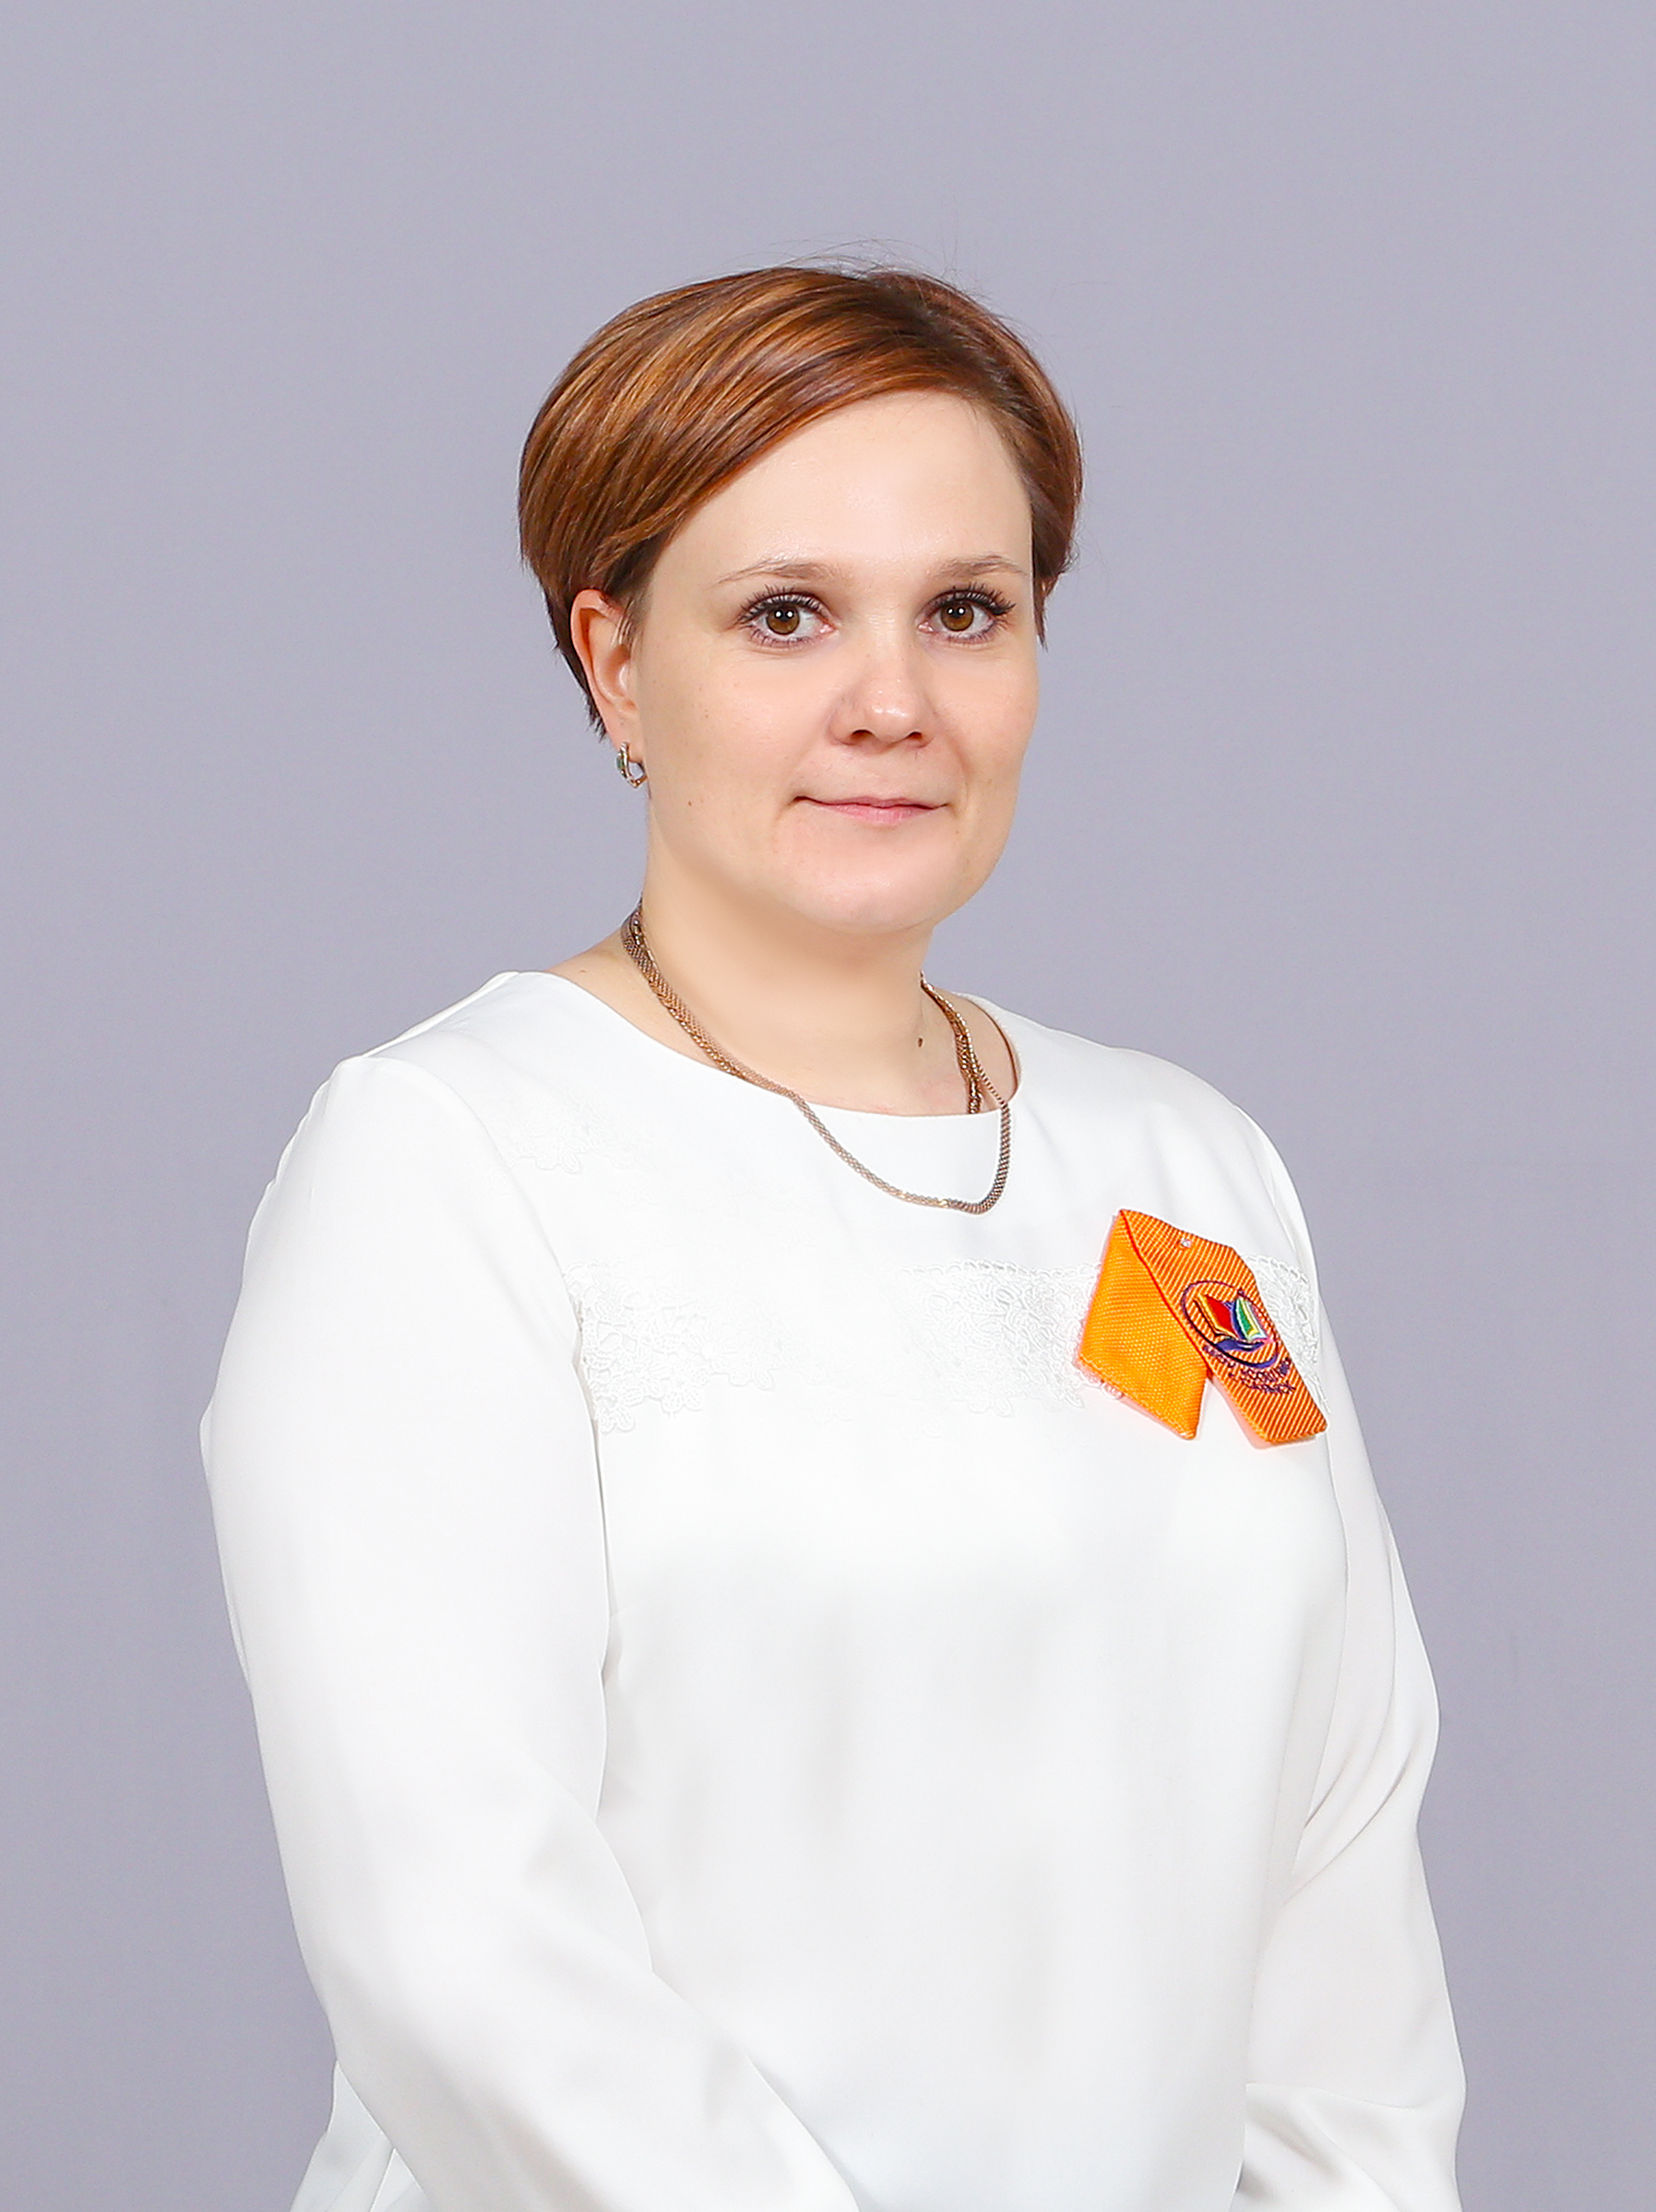 Ластовская Анна Владимировна.